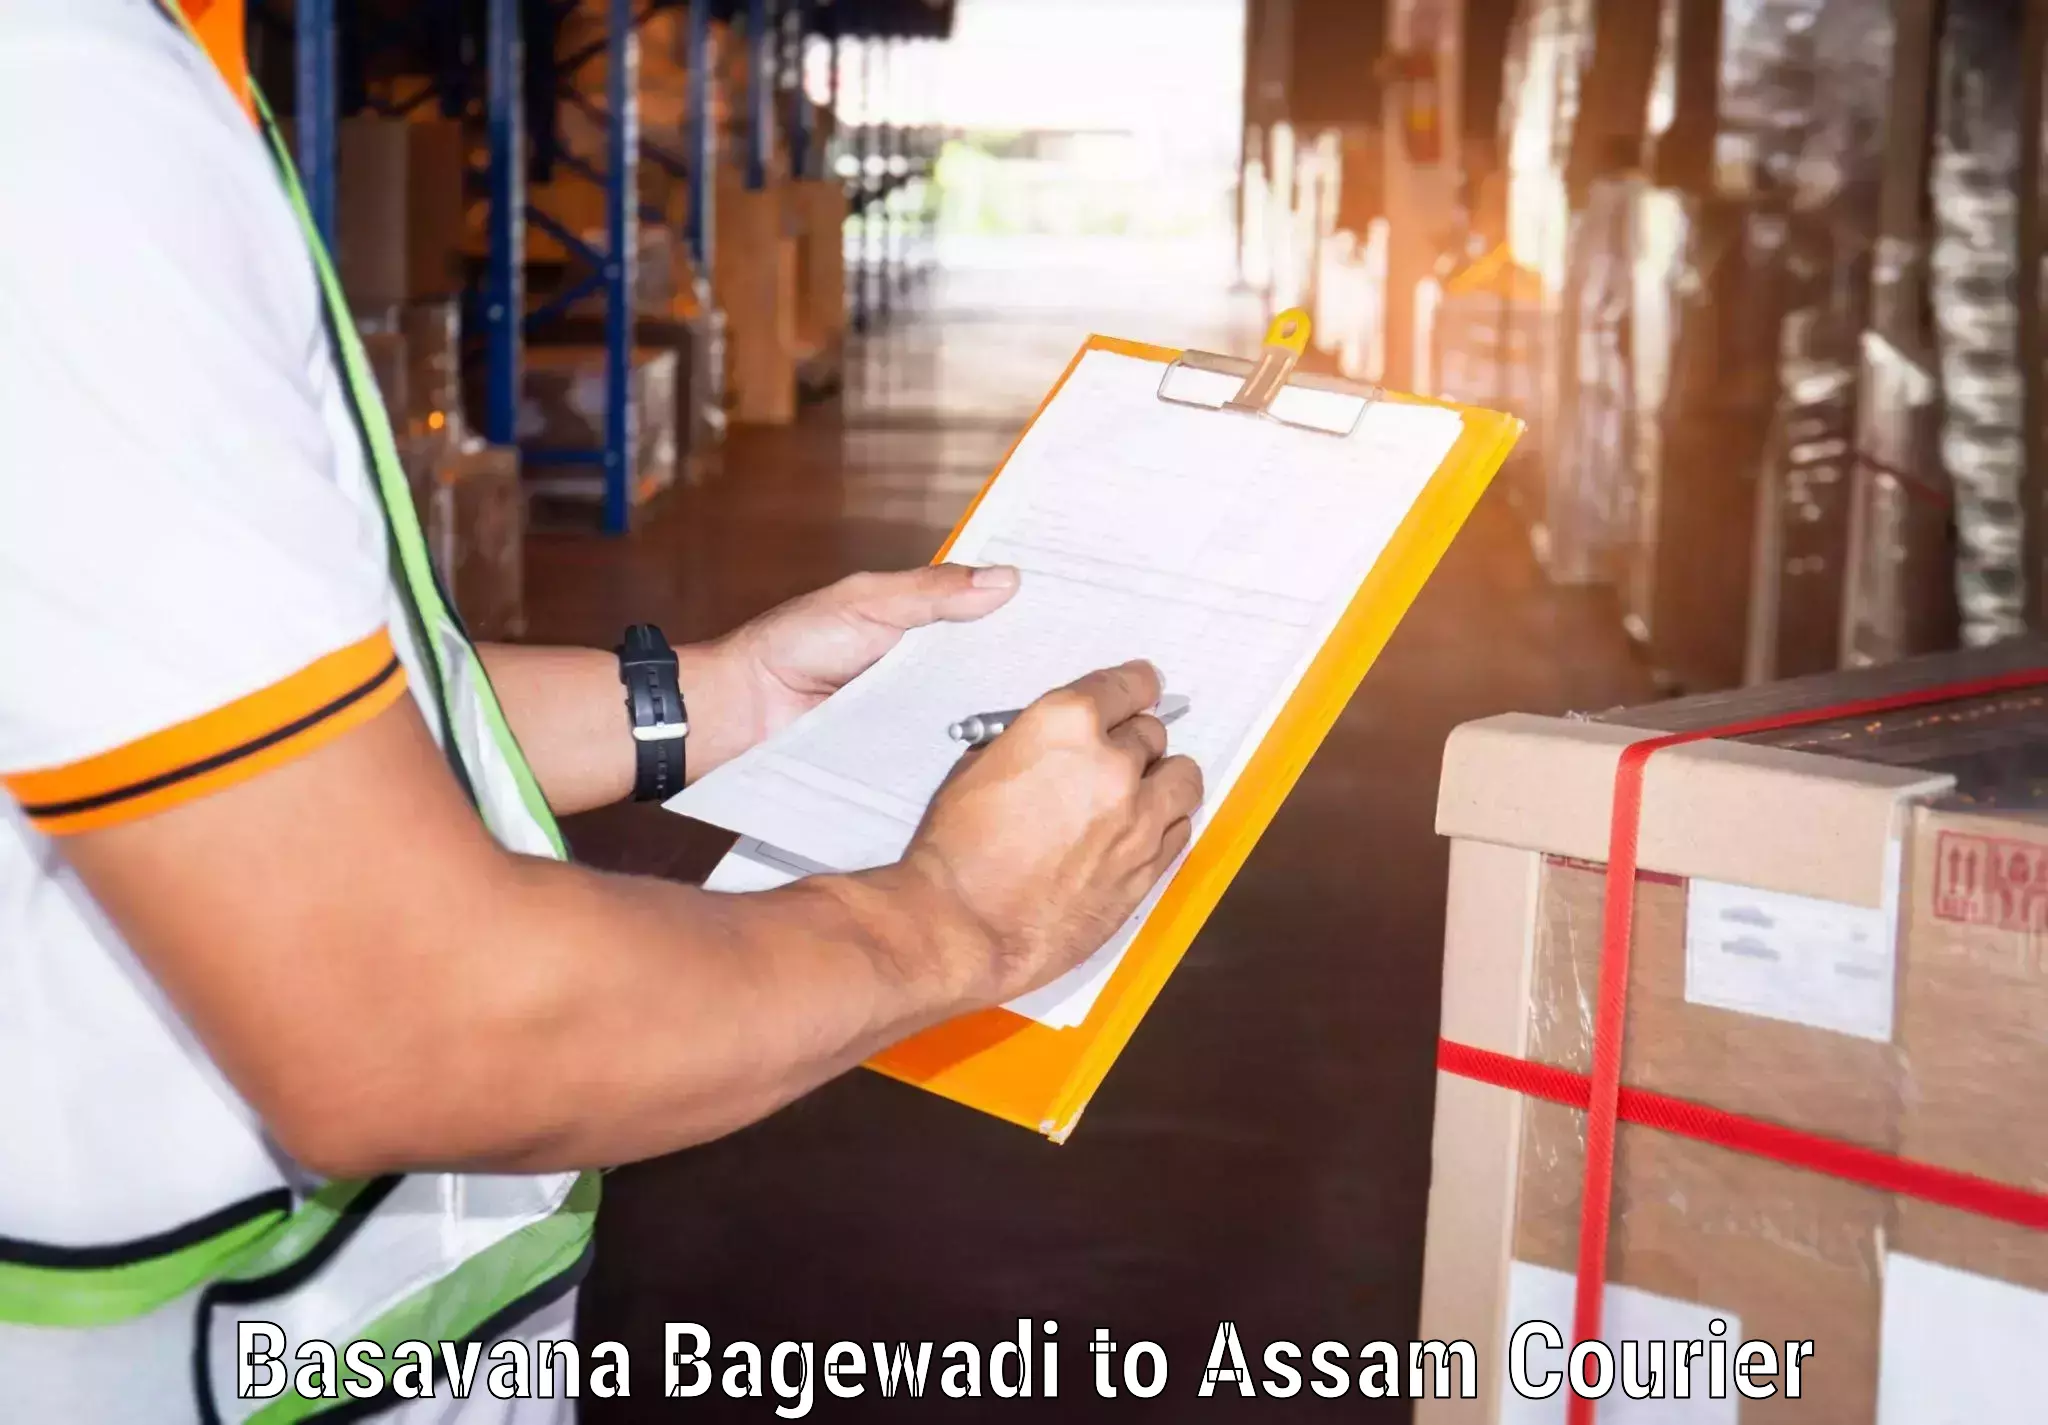 24/7 shipping services Basavana Bagewadi to Pathsala